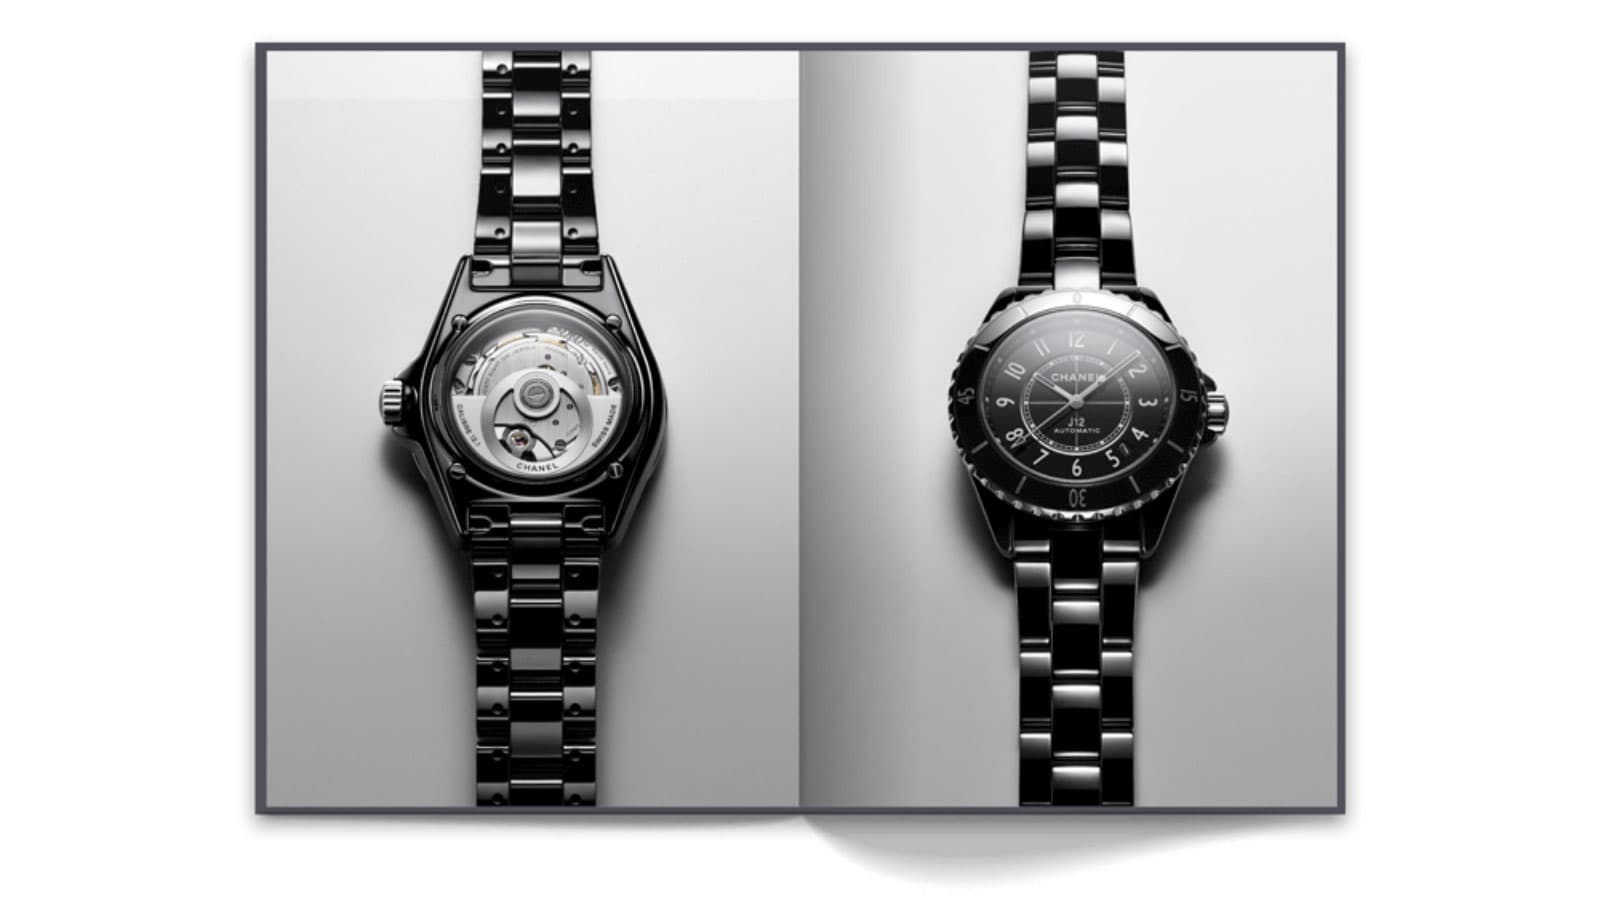 Chanel ra mắt sách về mẫu đồng hồ kinh điển J12